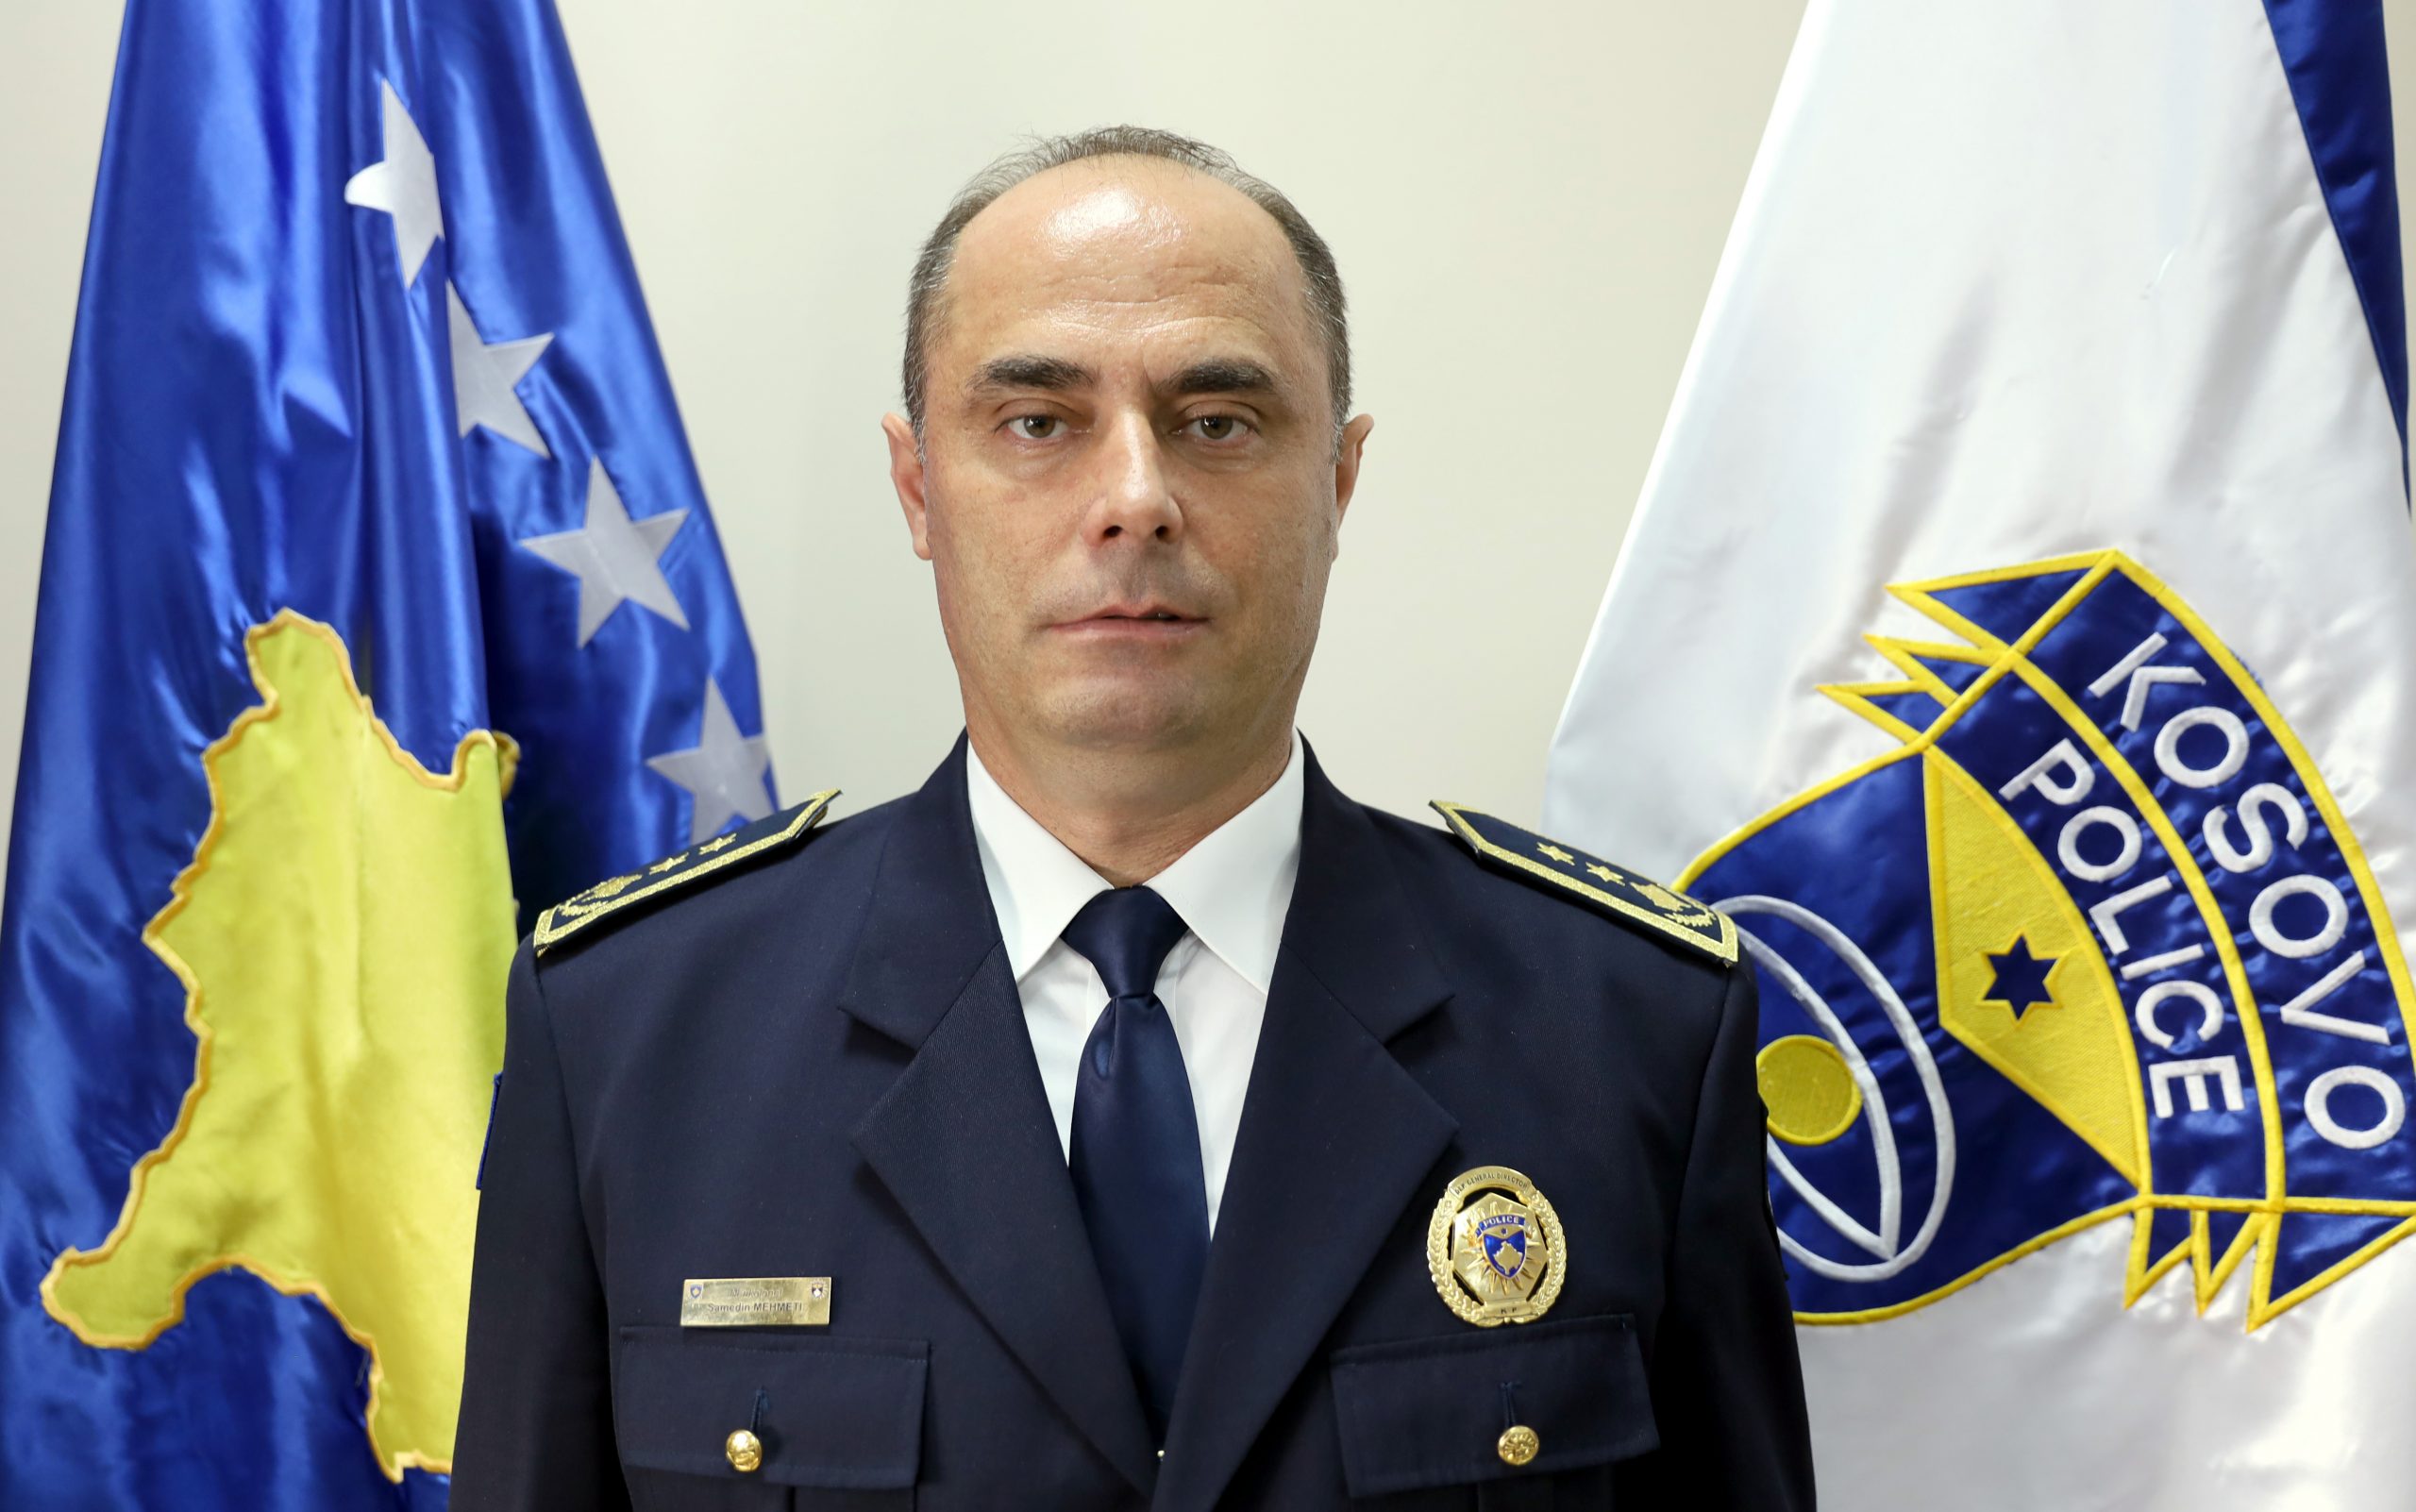 Interrogohet edhe shefi i Policisë, Samedin Mehmeti, për kapjen e 400kg kokainë në Lipjan